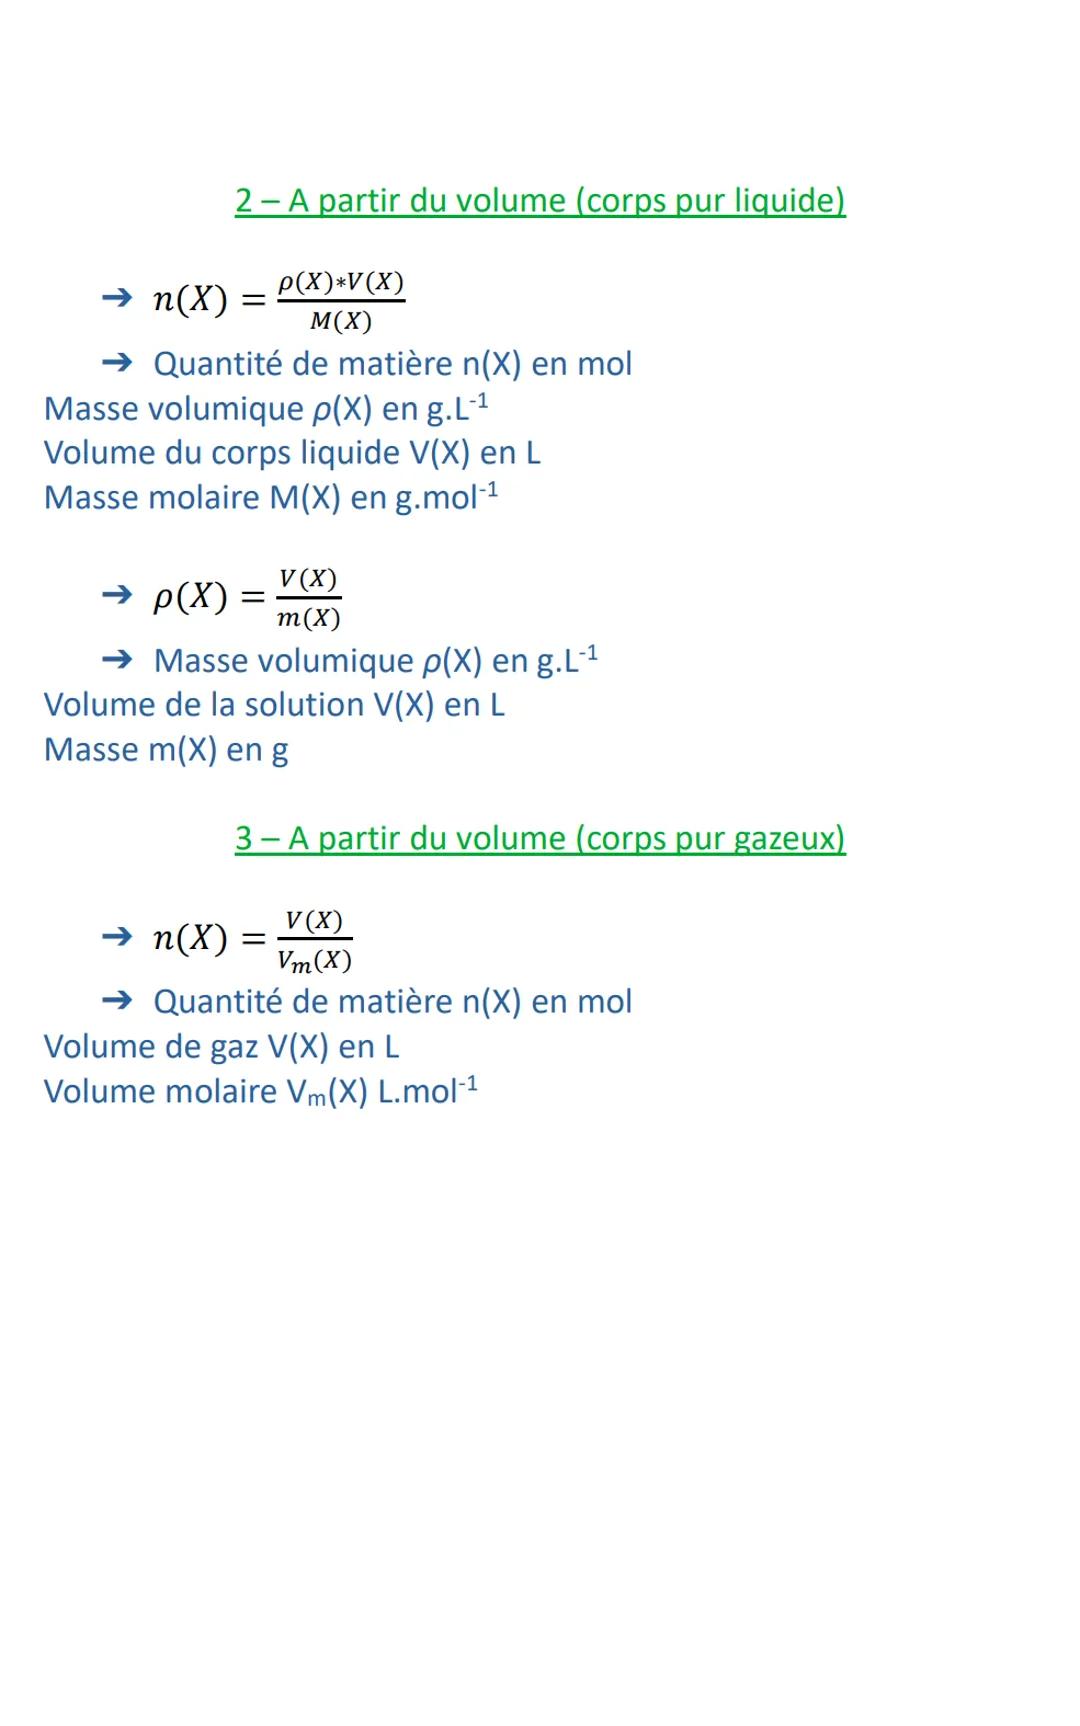 Chapitre 1: Composition d'un système initial
Ref: Activités 1 et 2
A SAVOIR :
→p(air) = 1,3 g.L-¹
→p(H₂O) = 1,0 kg.L-¹
PC C1
→ Moles: Paquet